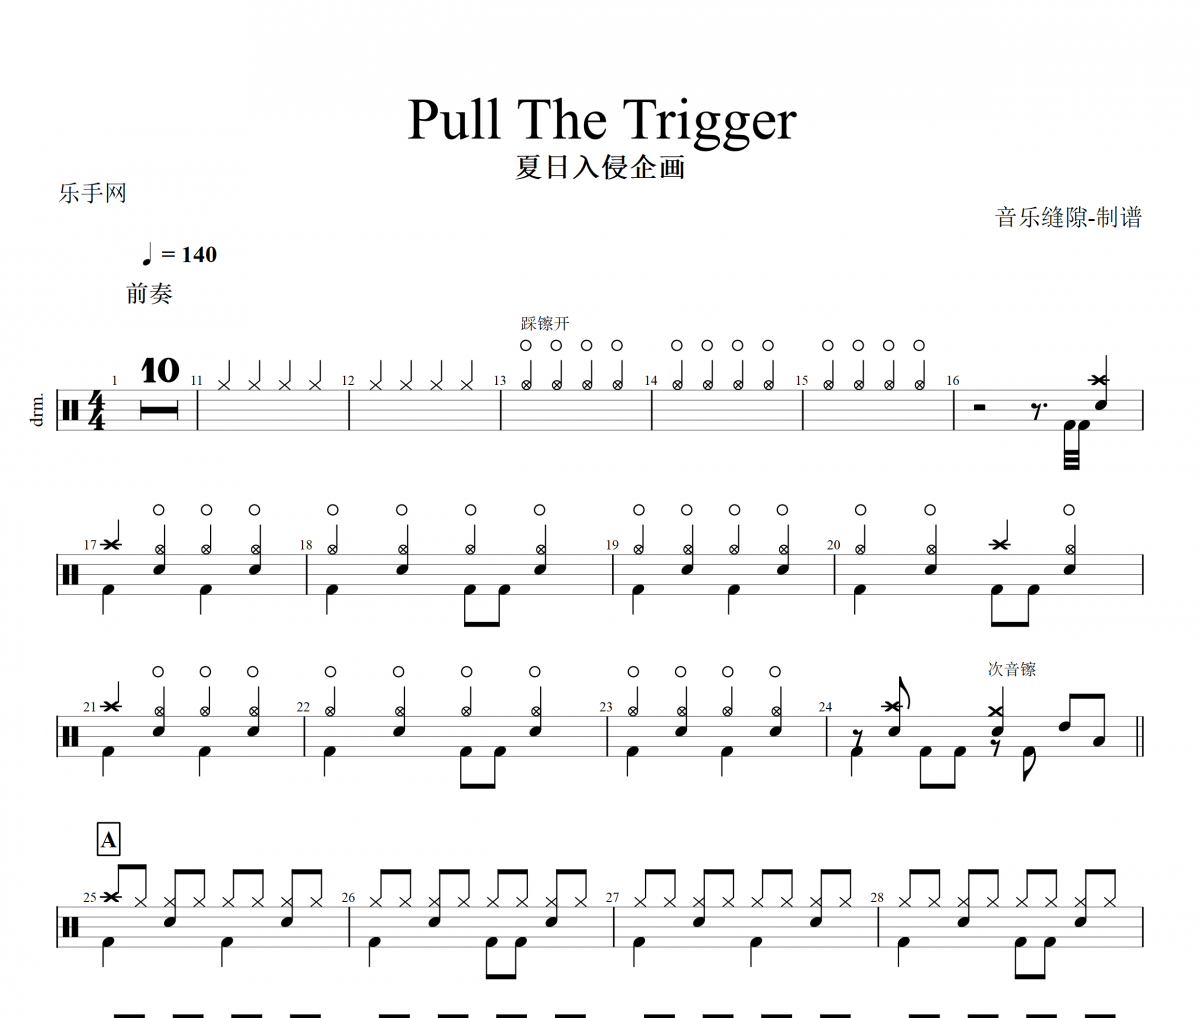 夏日入侵企画 -Pull The Trigger架子鼓谱爵士鼓曲谱